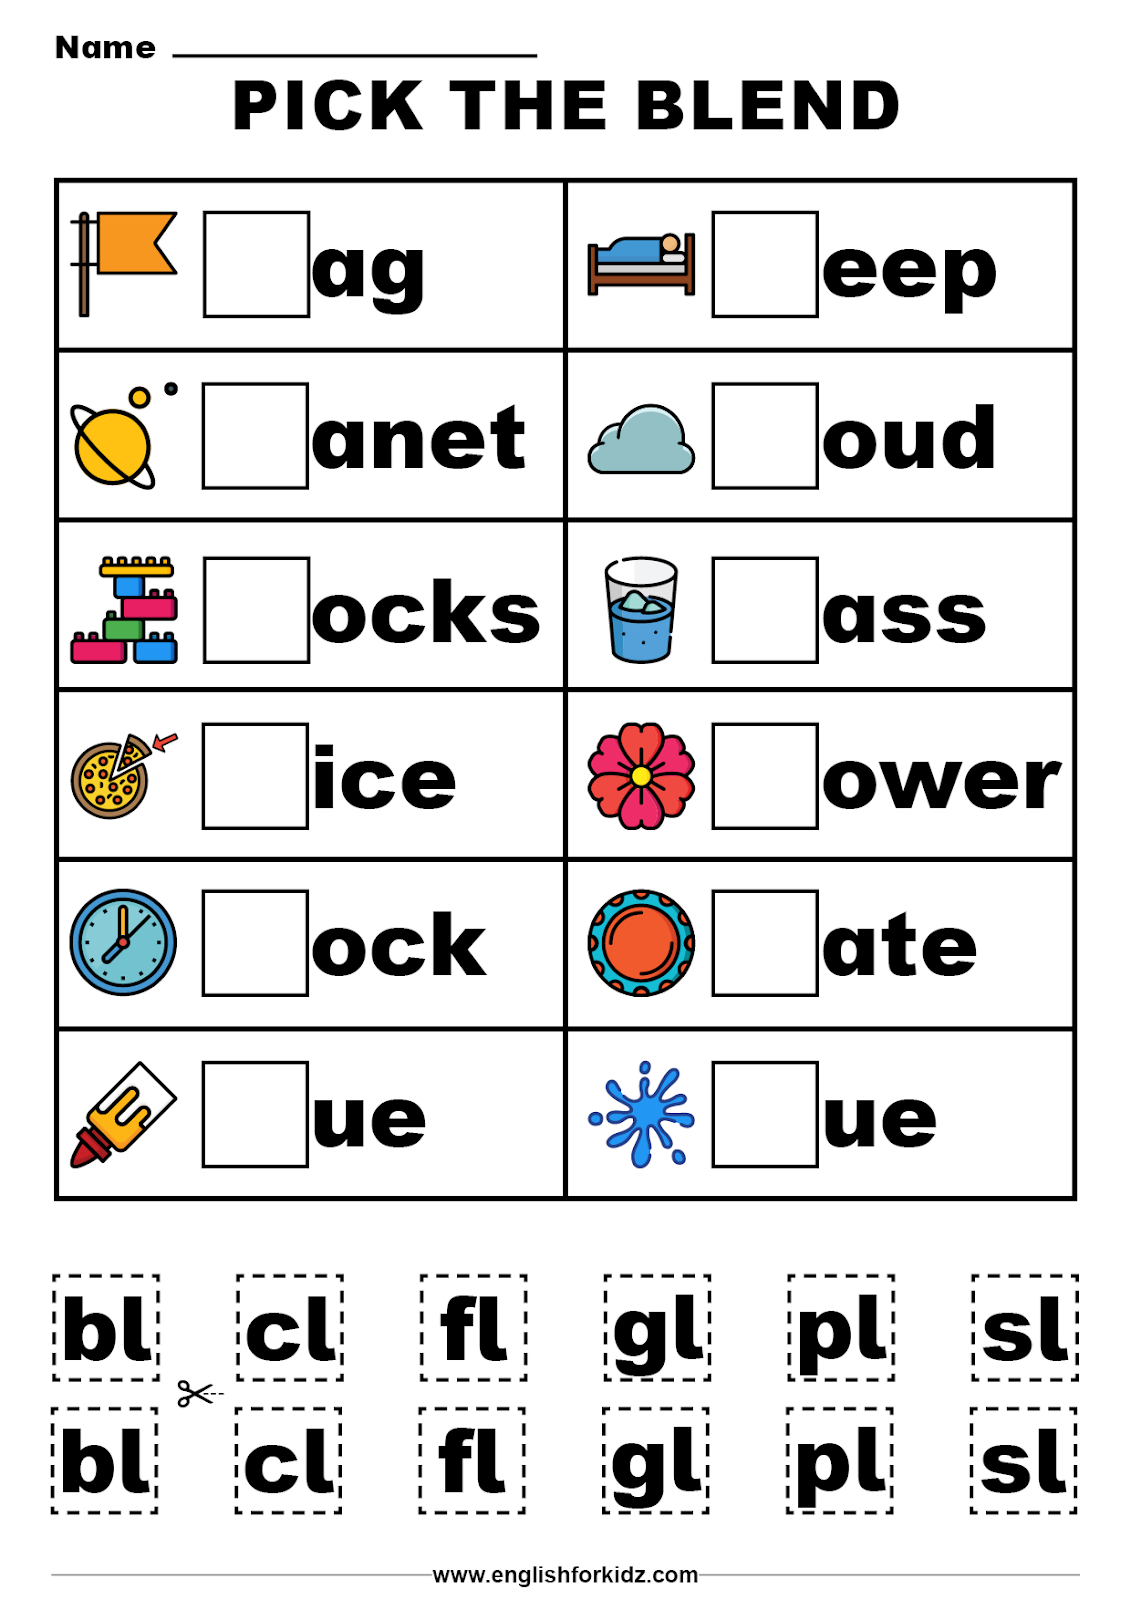 Free Printable Blends Worksheets For Kindergarten